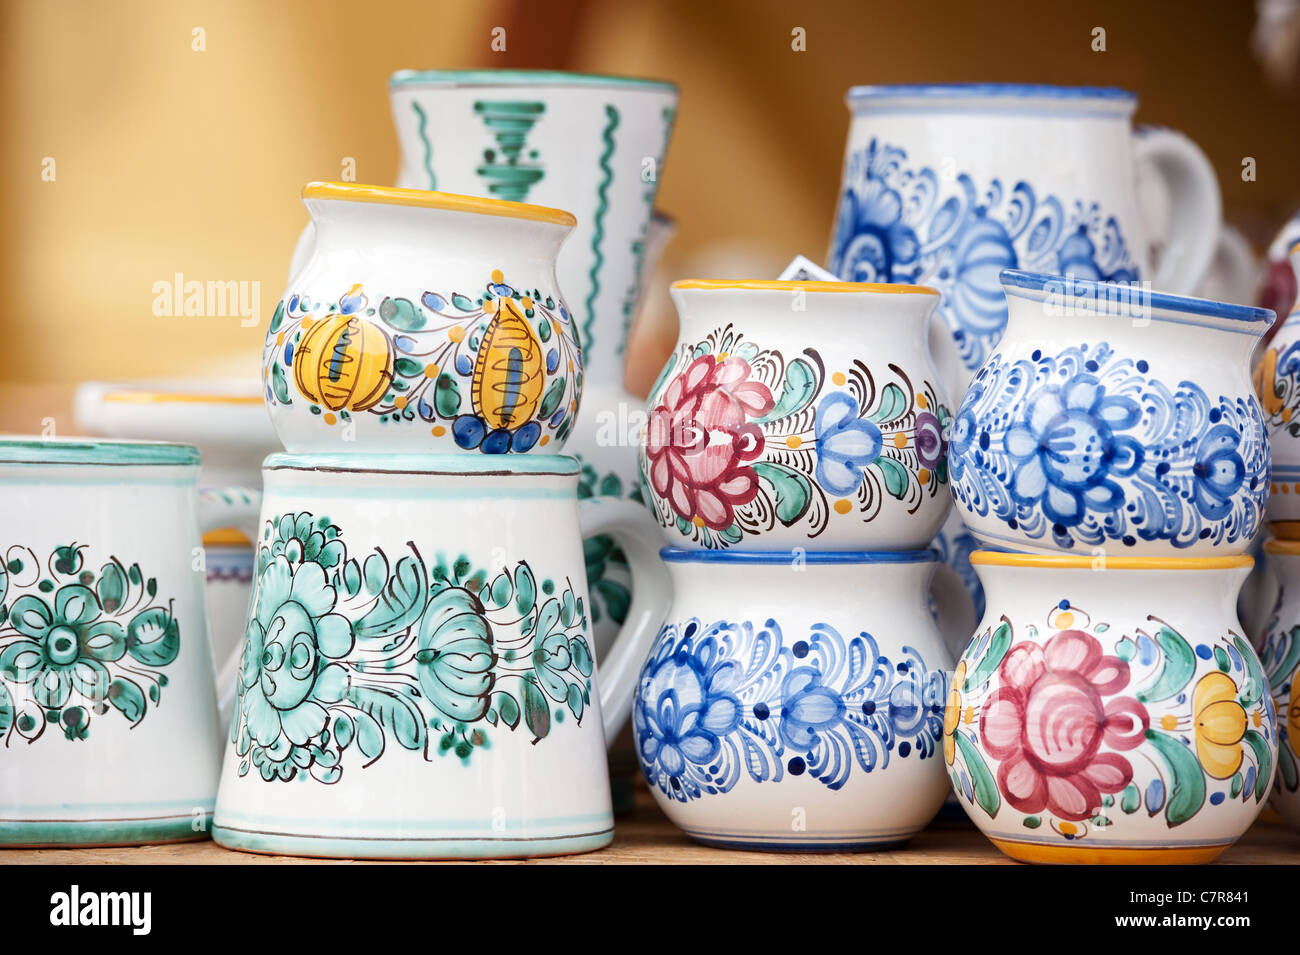 popular Modra ceramics from Slovakia Stock Photo